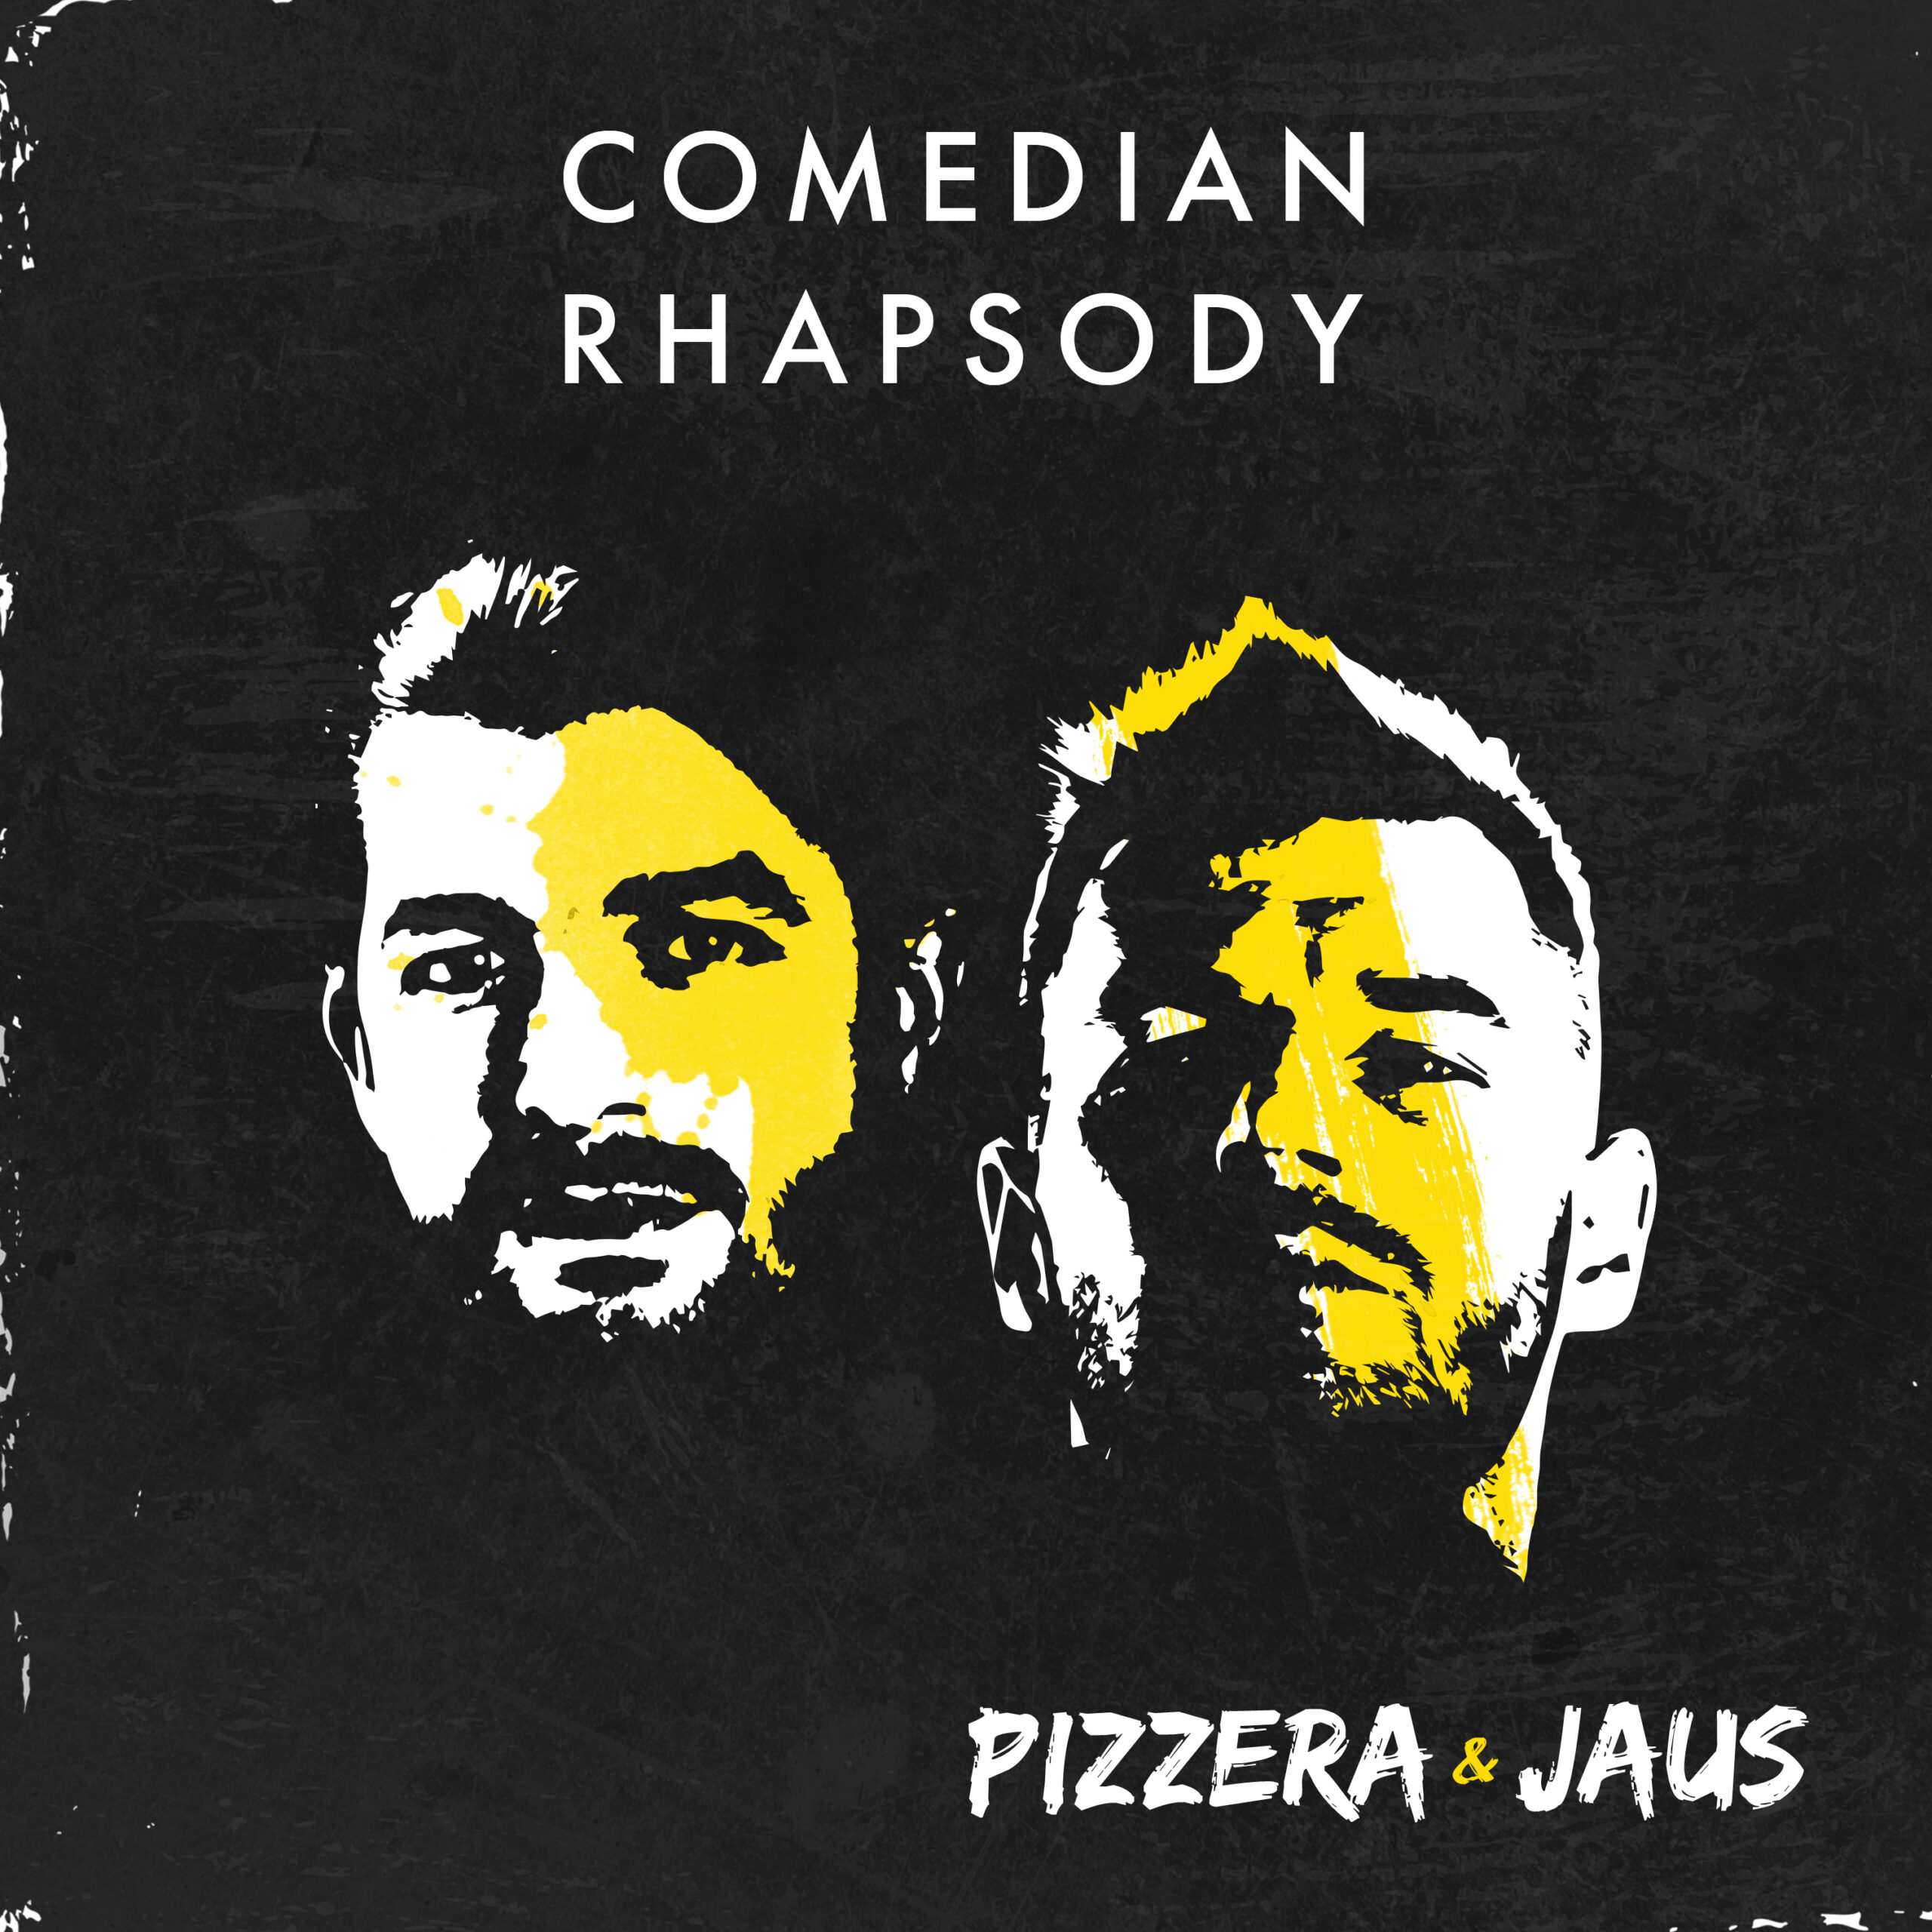 Album Release: Comedian Rhapsody